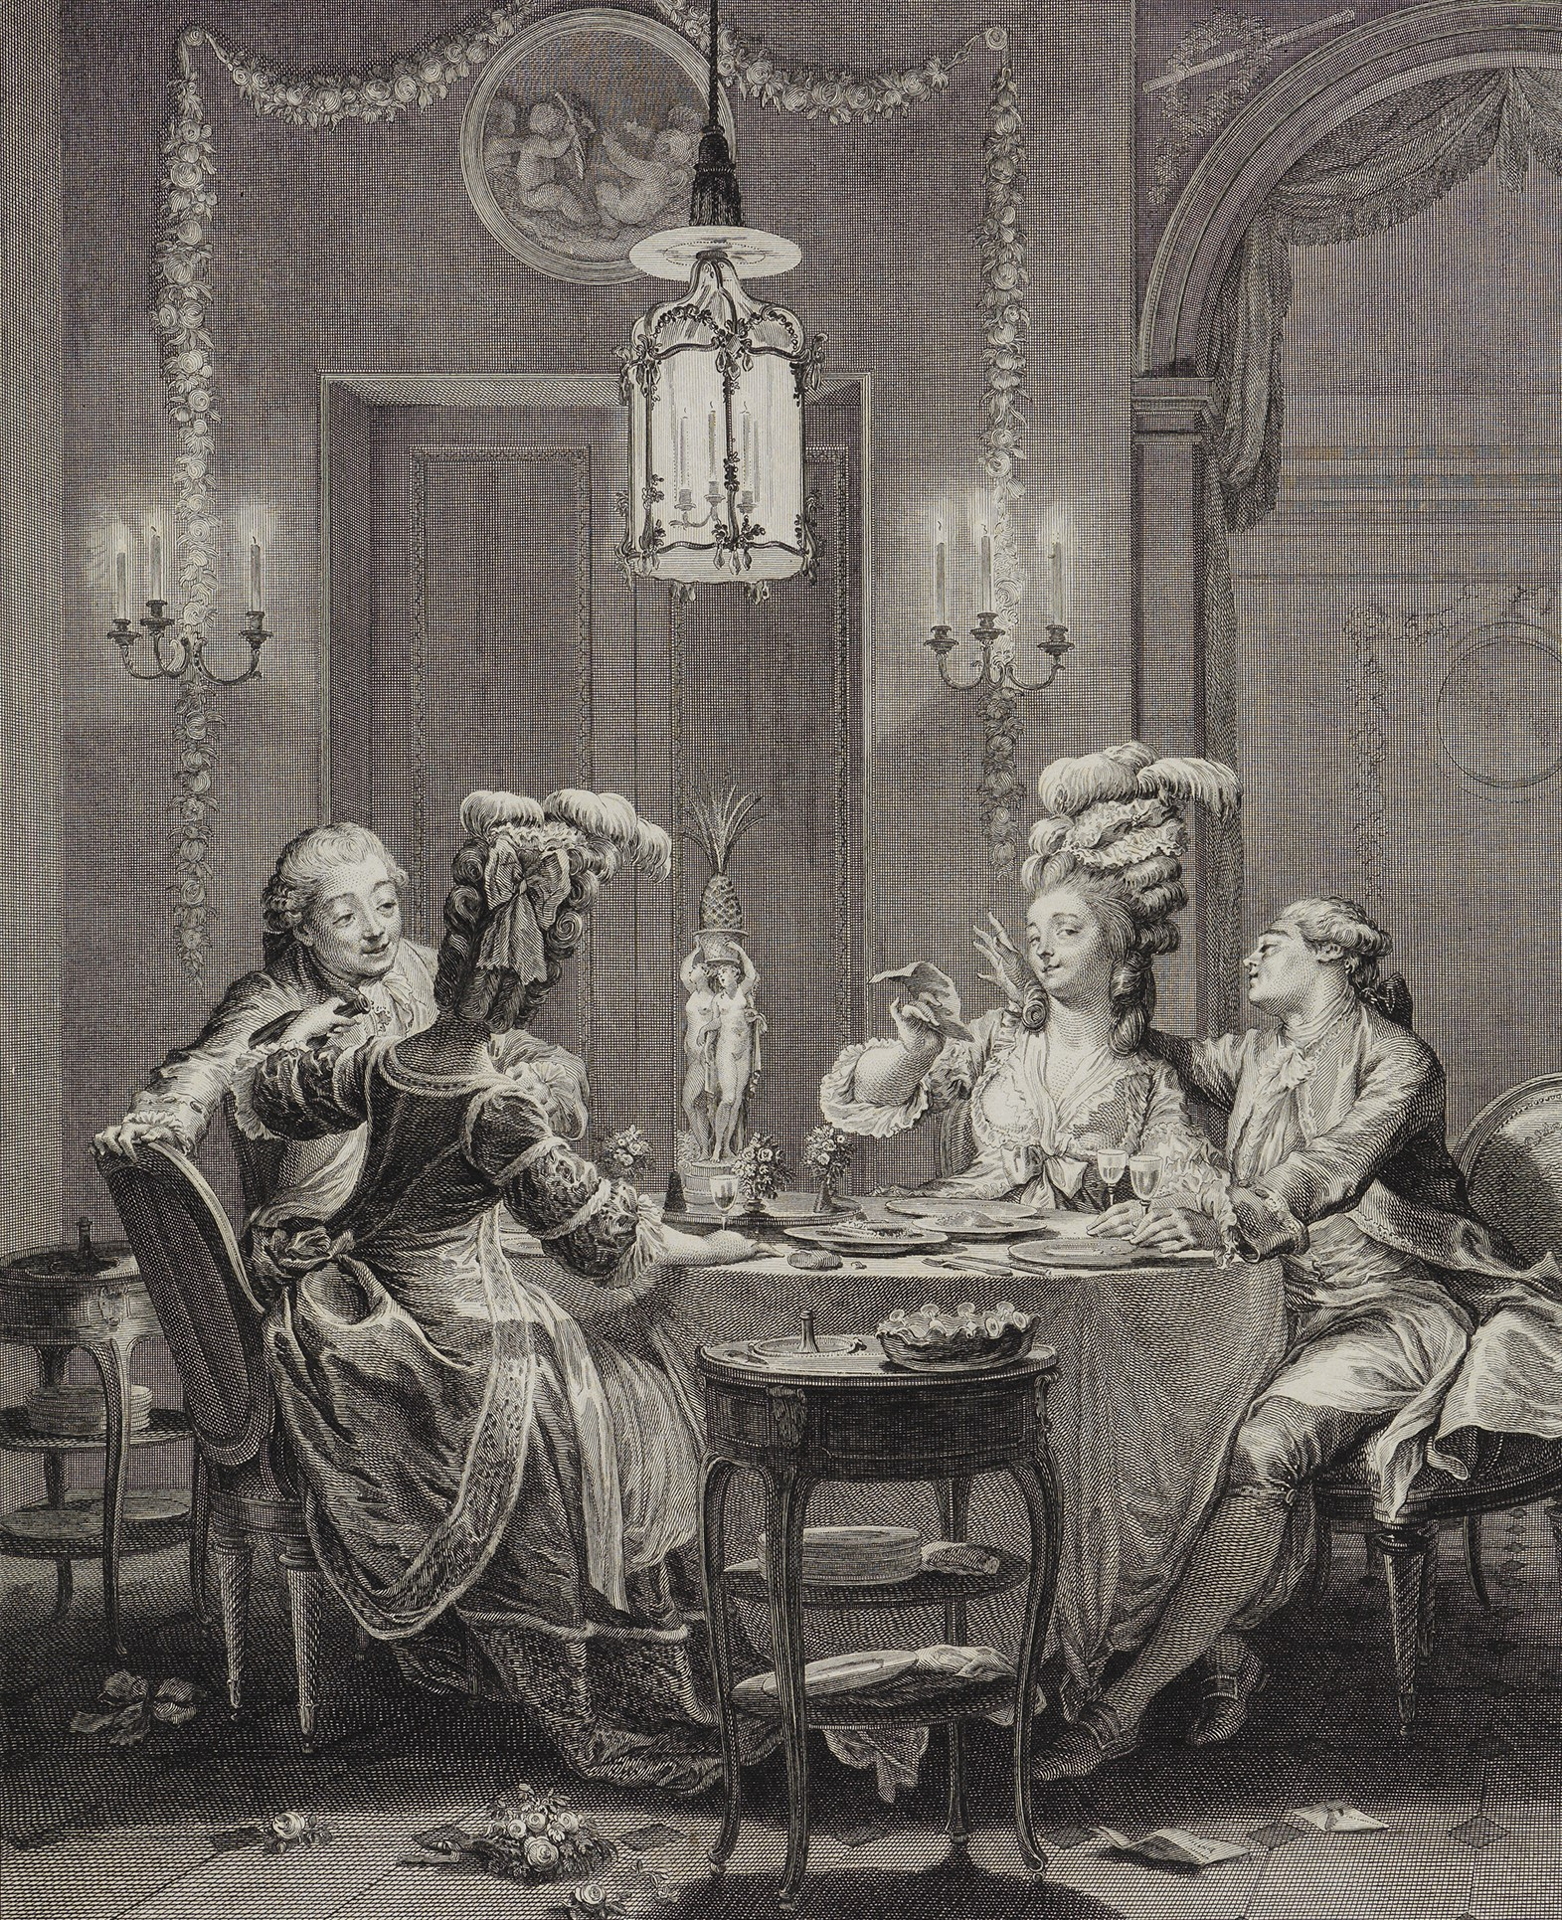 Le Souper fin von Isidore Stanislas Henri Helman. Es zeigt einen üppig gedeckten Tisch mit vier Personen in Rokokokleidern.